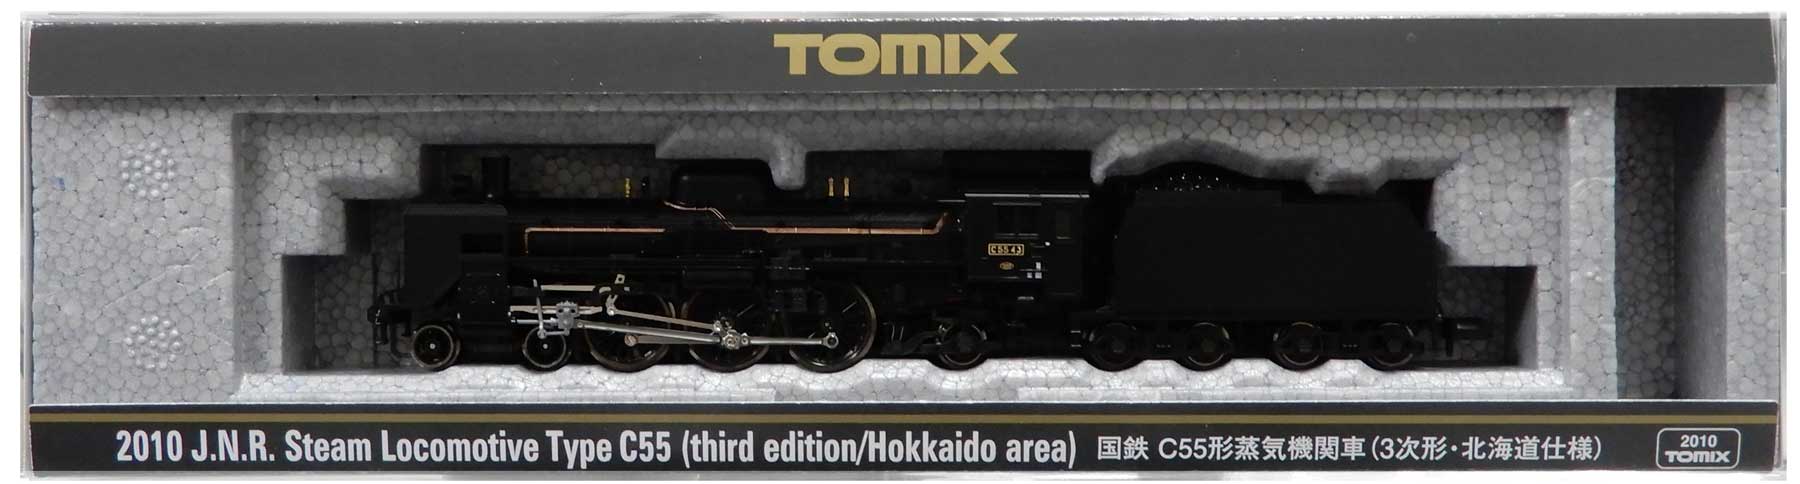 公式]鉄道模型(2010国鉄 C55形蒸気機関車 (3次形・北海道仕様))商品 ...